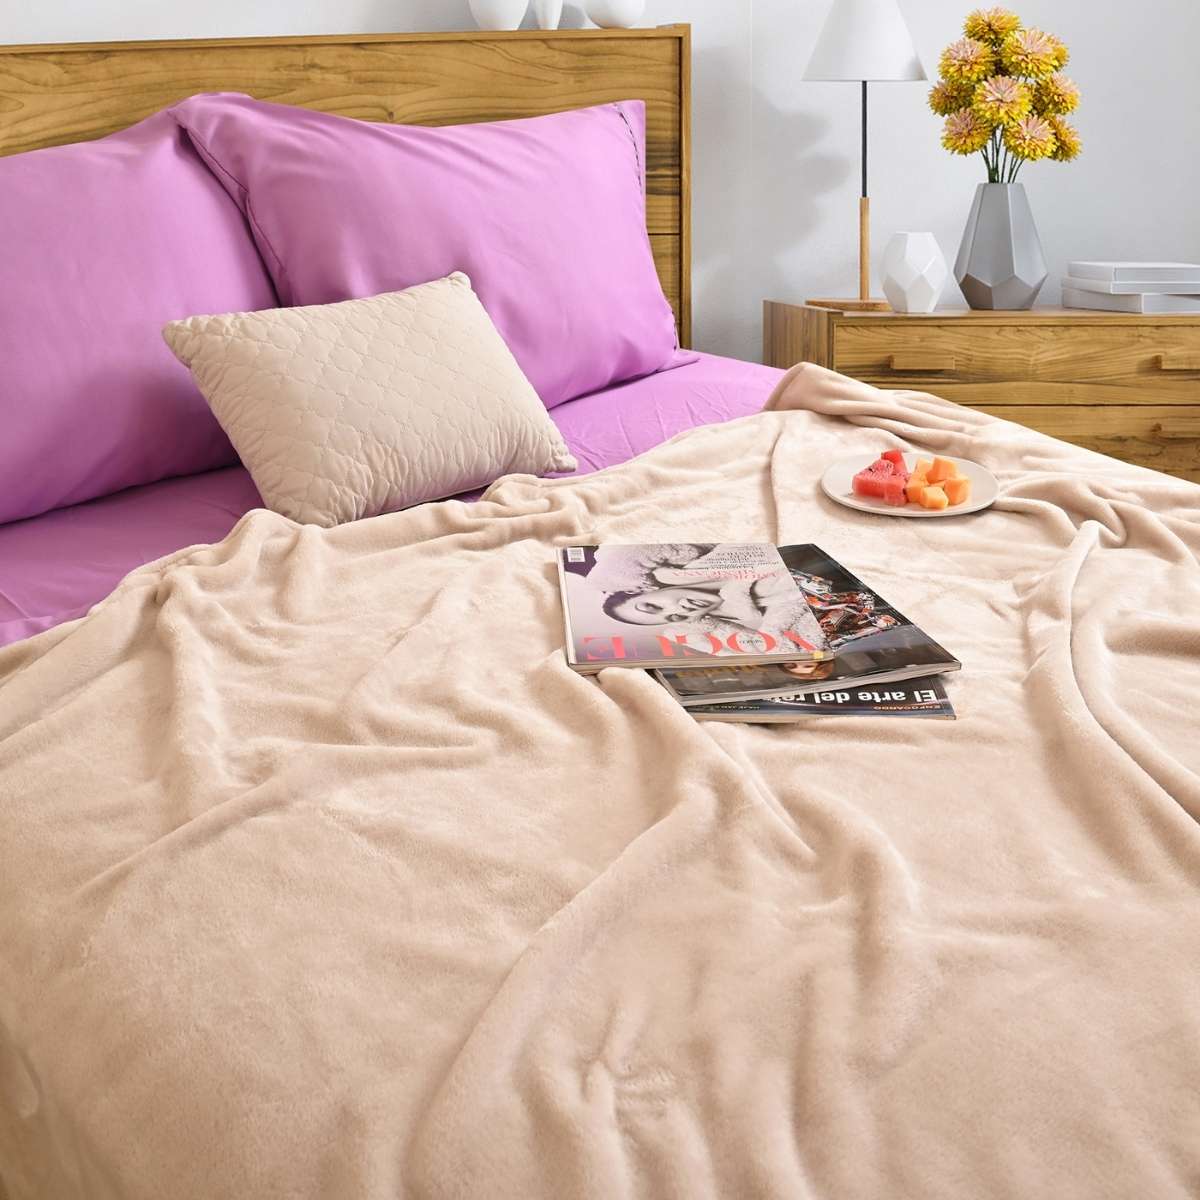 Cobija de flanel color arena tamaño queen size tendida sobre una cama